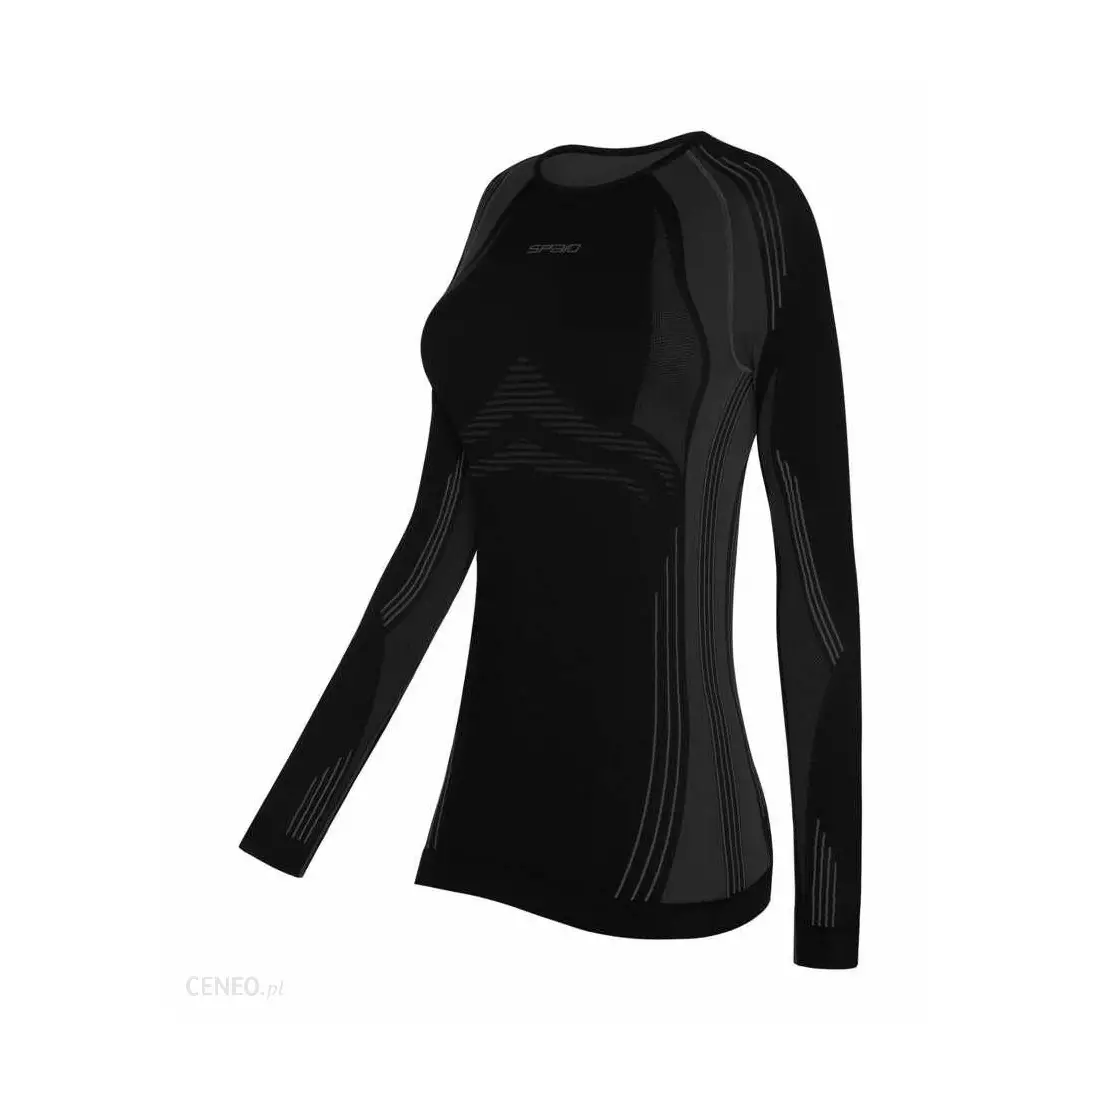 SPAIO lenjerie termoactivă, tricou pentru femei PUTERNIC negru-gri